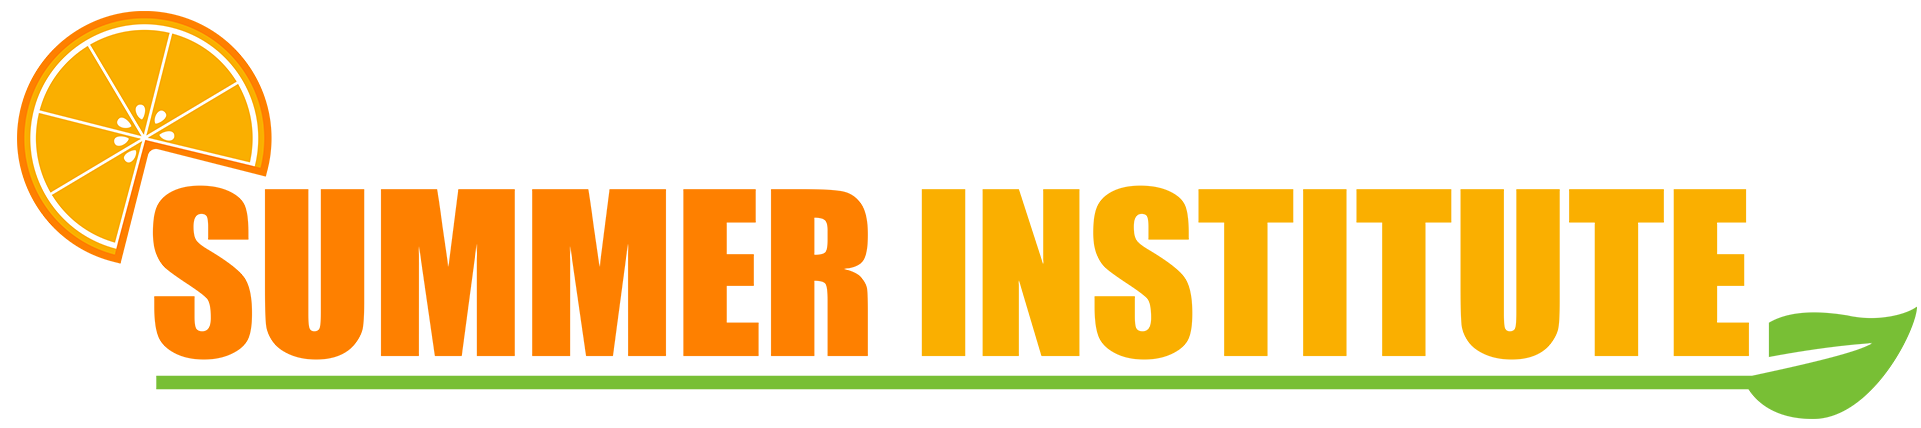 Summer Institute logo